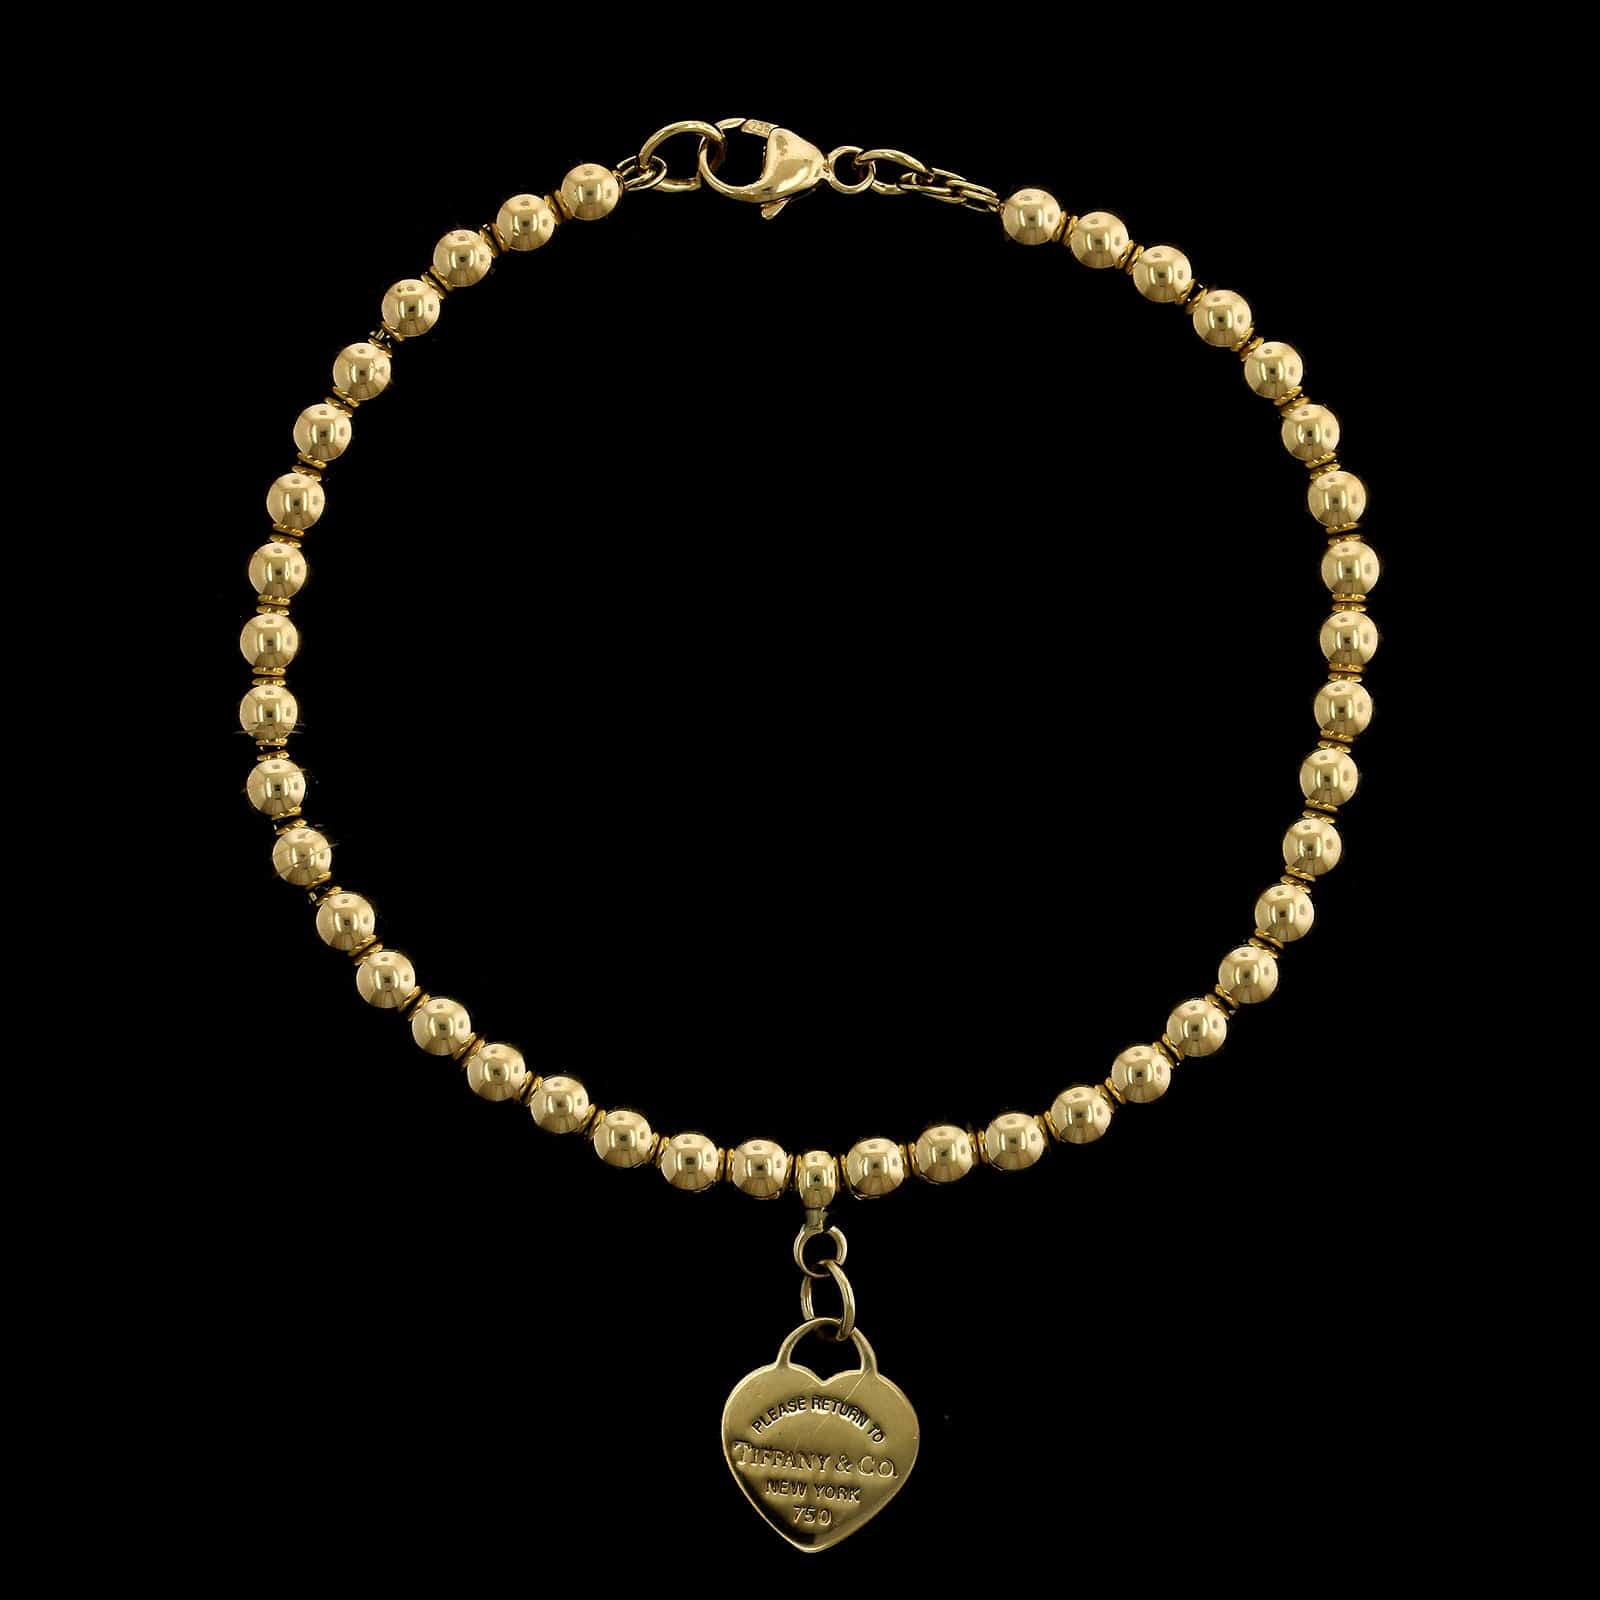 Tiffany Co 18K Yellow Gold Heart Tag Charm Bracelet, Tiffany & Co.